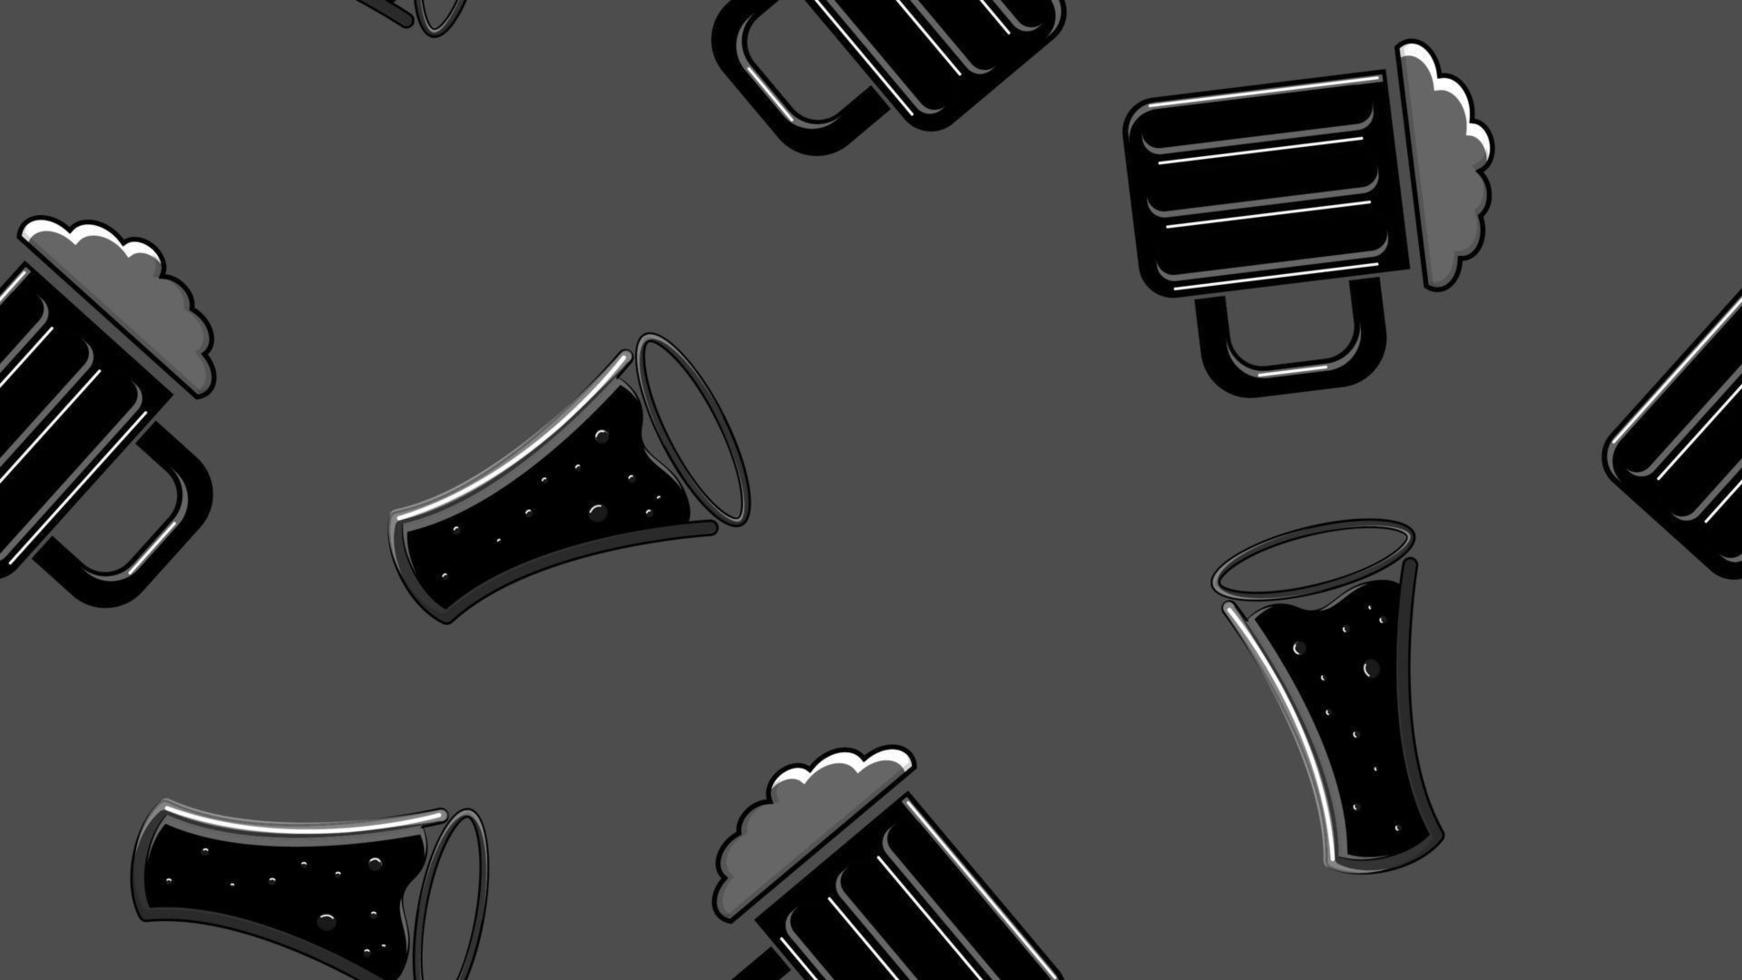 sömlös mönster av svart repetitiva alkoholhaltig öl glasögon glas med öl skummande hoppy malt hantverk lageröl på en svart och vit bakgrund för st. Patricks dag. vektor illustration